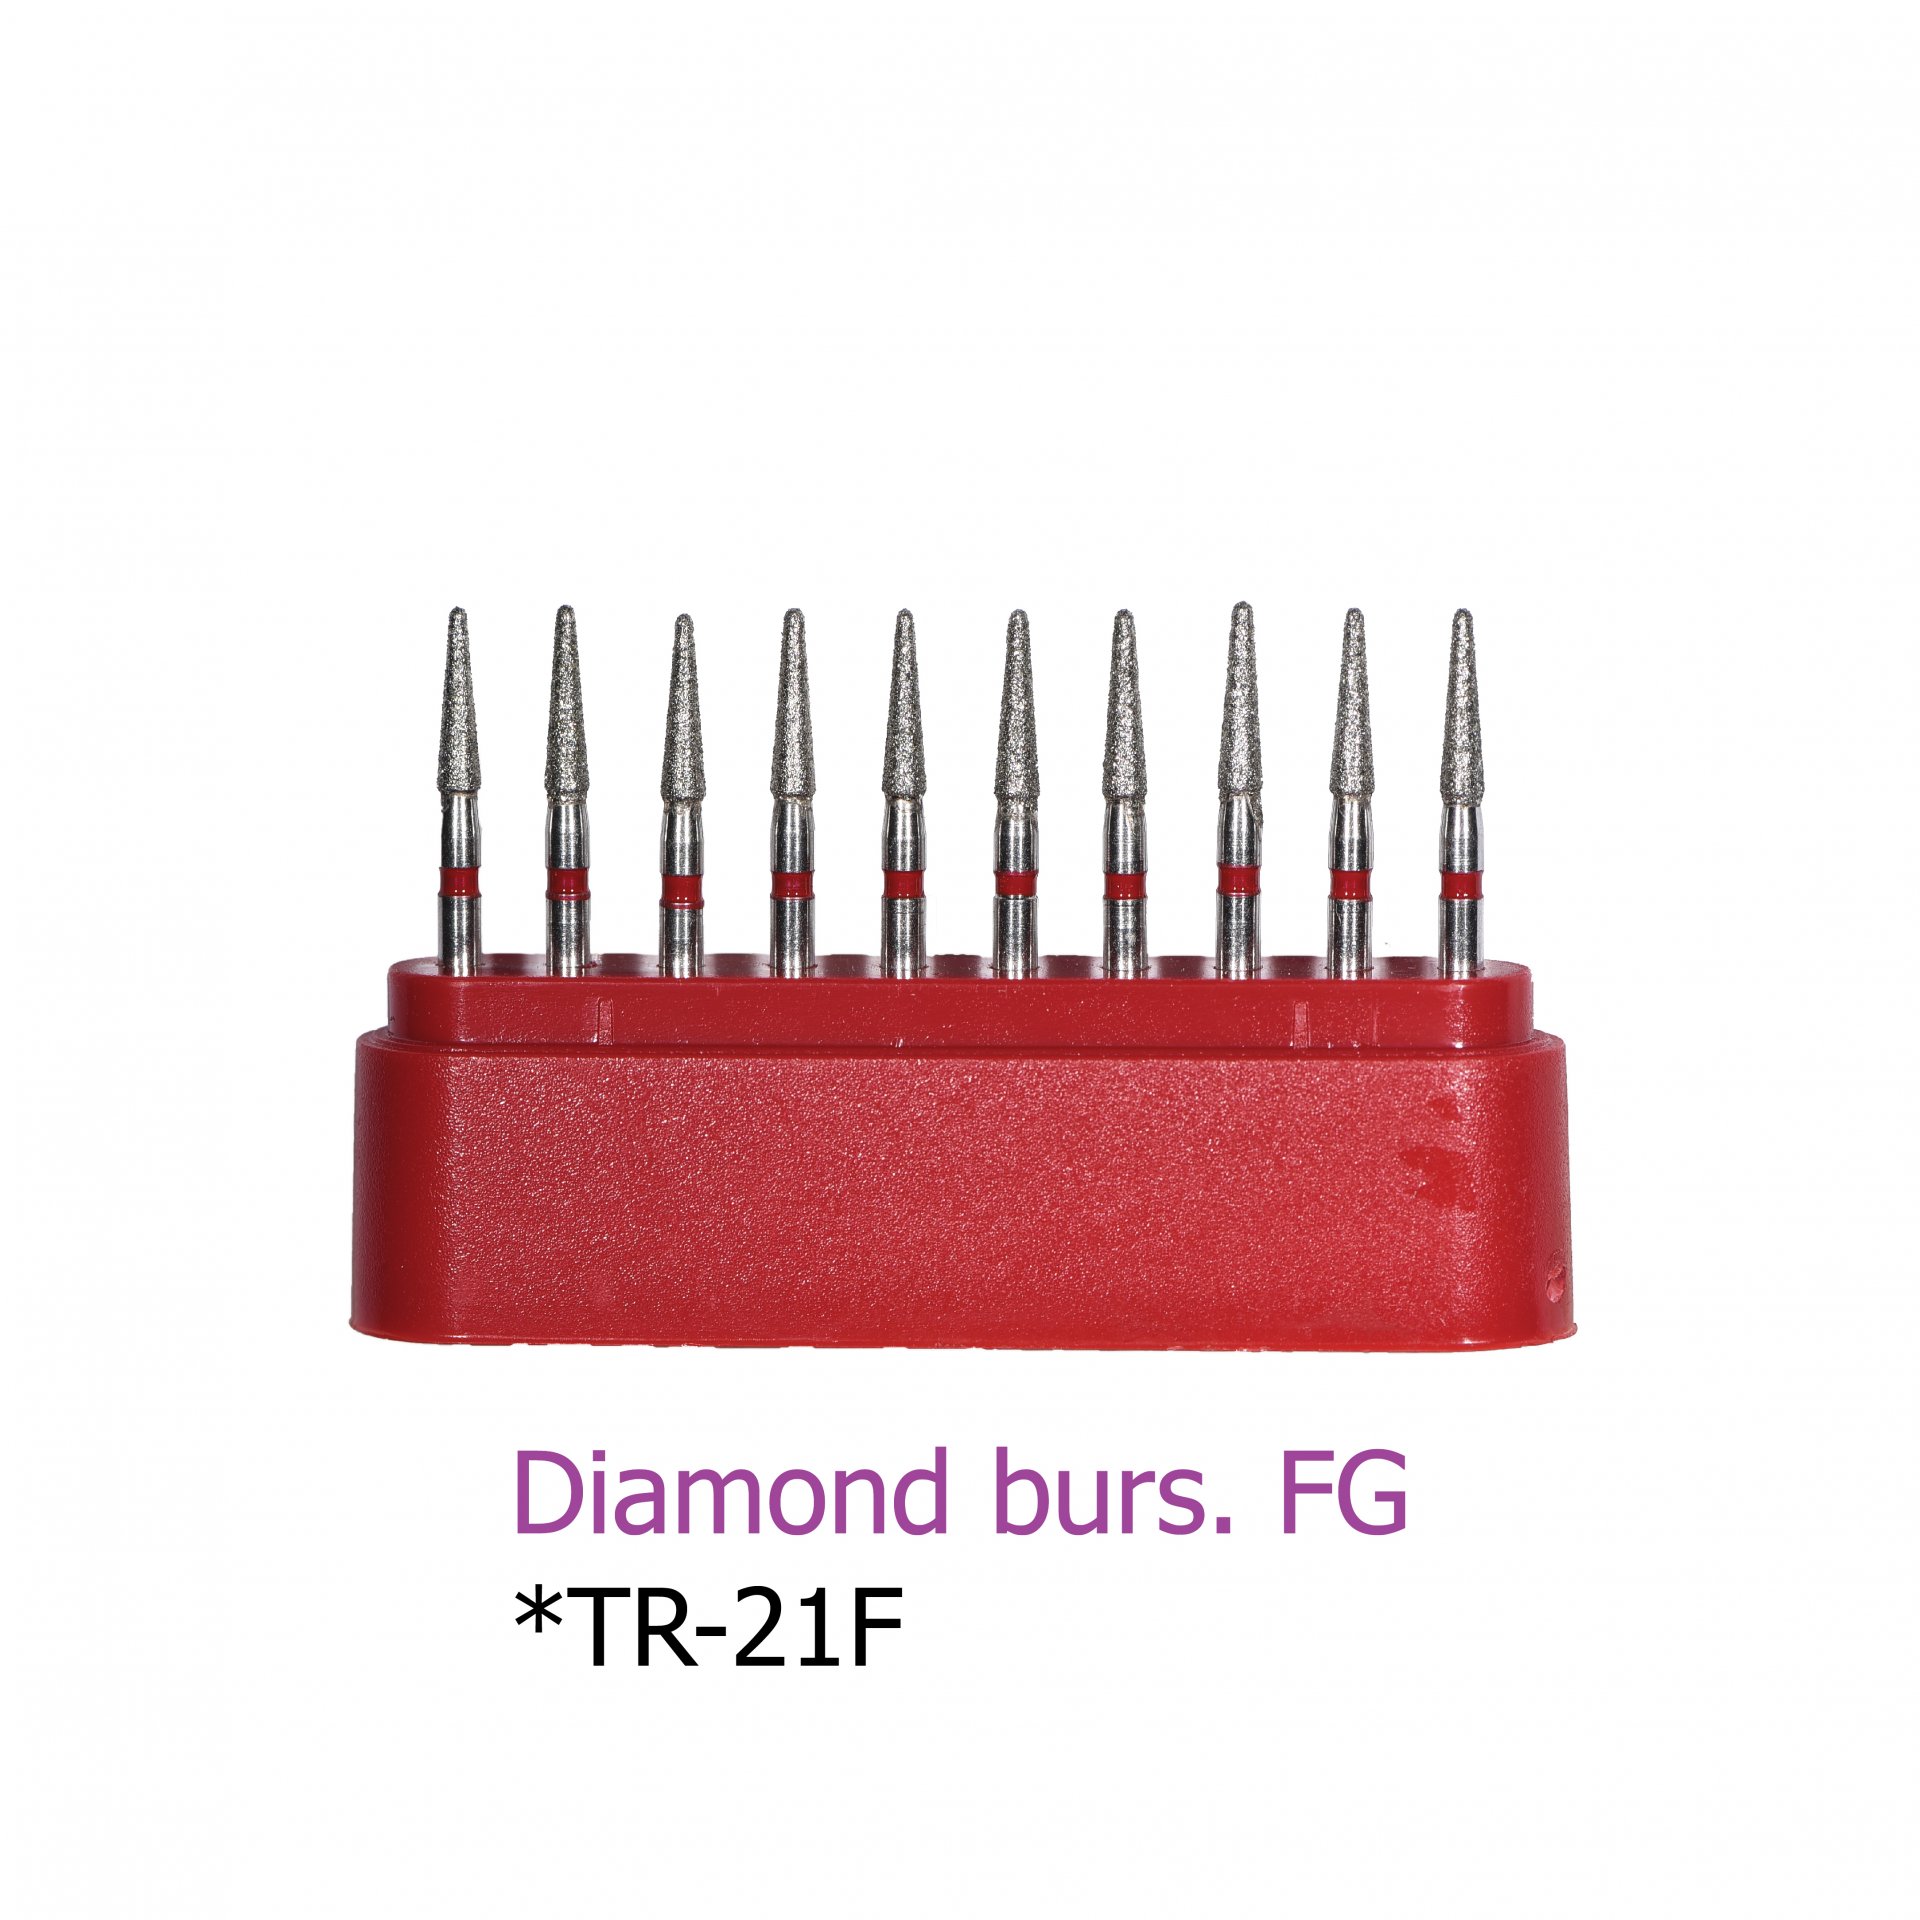 Diamond burs. FG *TR-21F